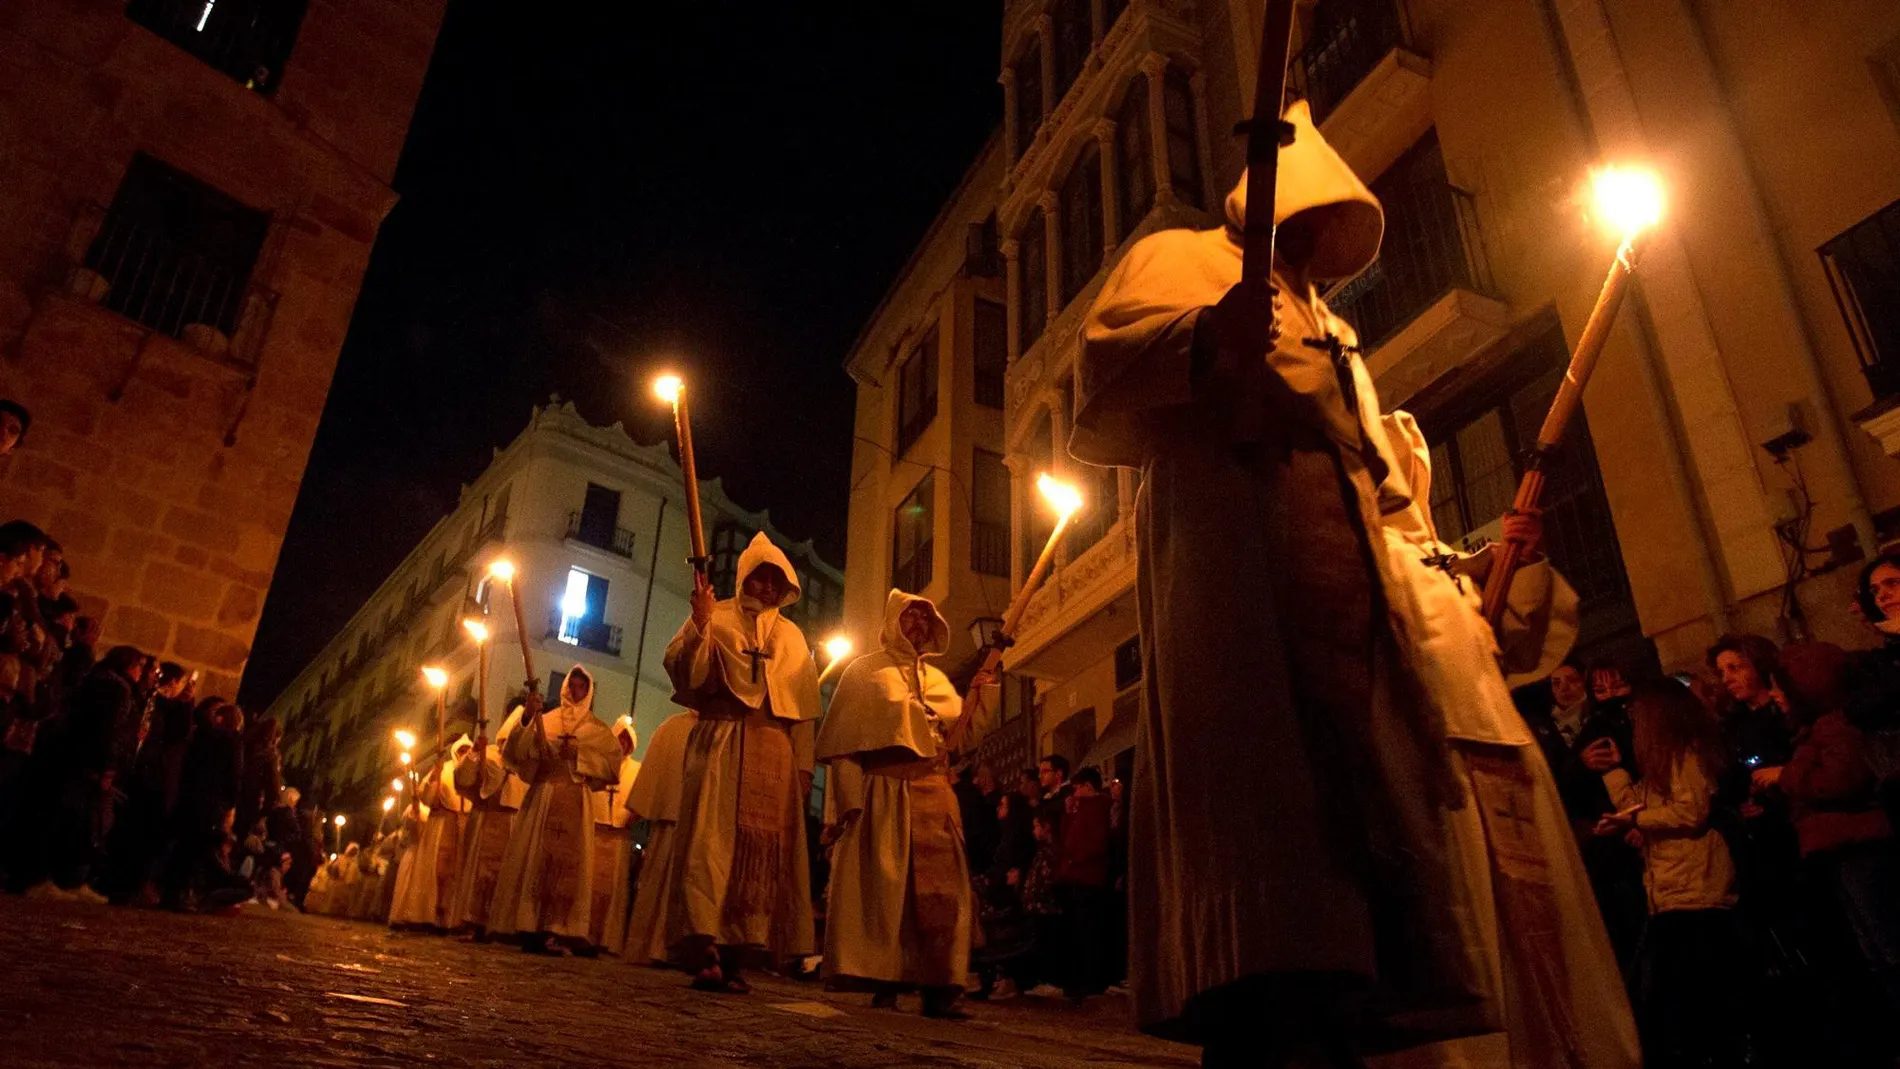 Imaagen de archivo de una procesión nocturna 